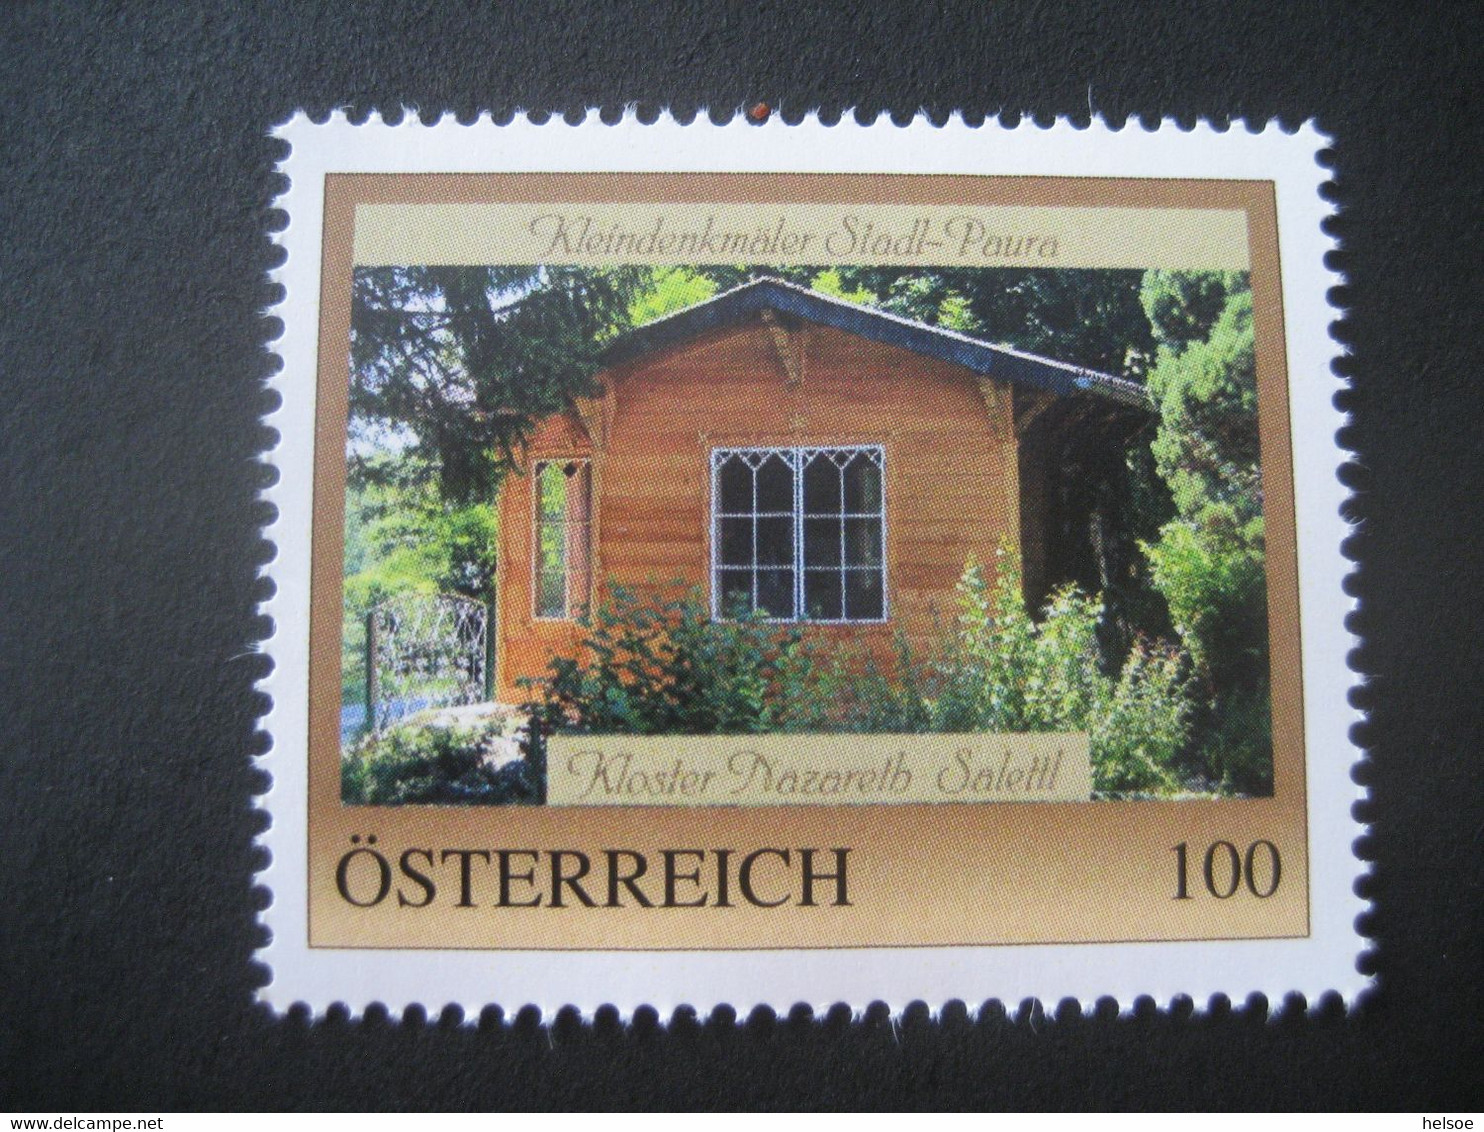 Österreich 2022- Personalisierte Briefmarke 8141528 Stadl Paura, Kleindenkmäler - Kloster Nazareth Salettl, Ungebraucht - Persoonlijke Postzegels